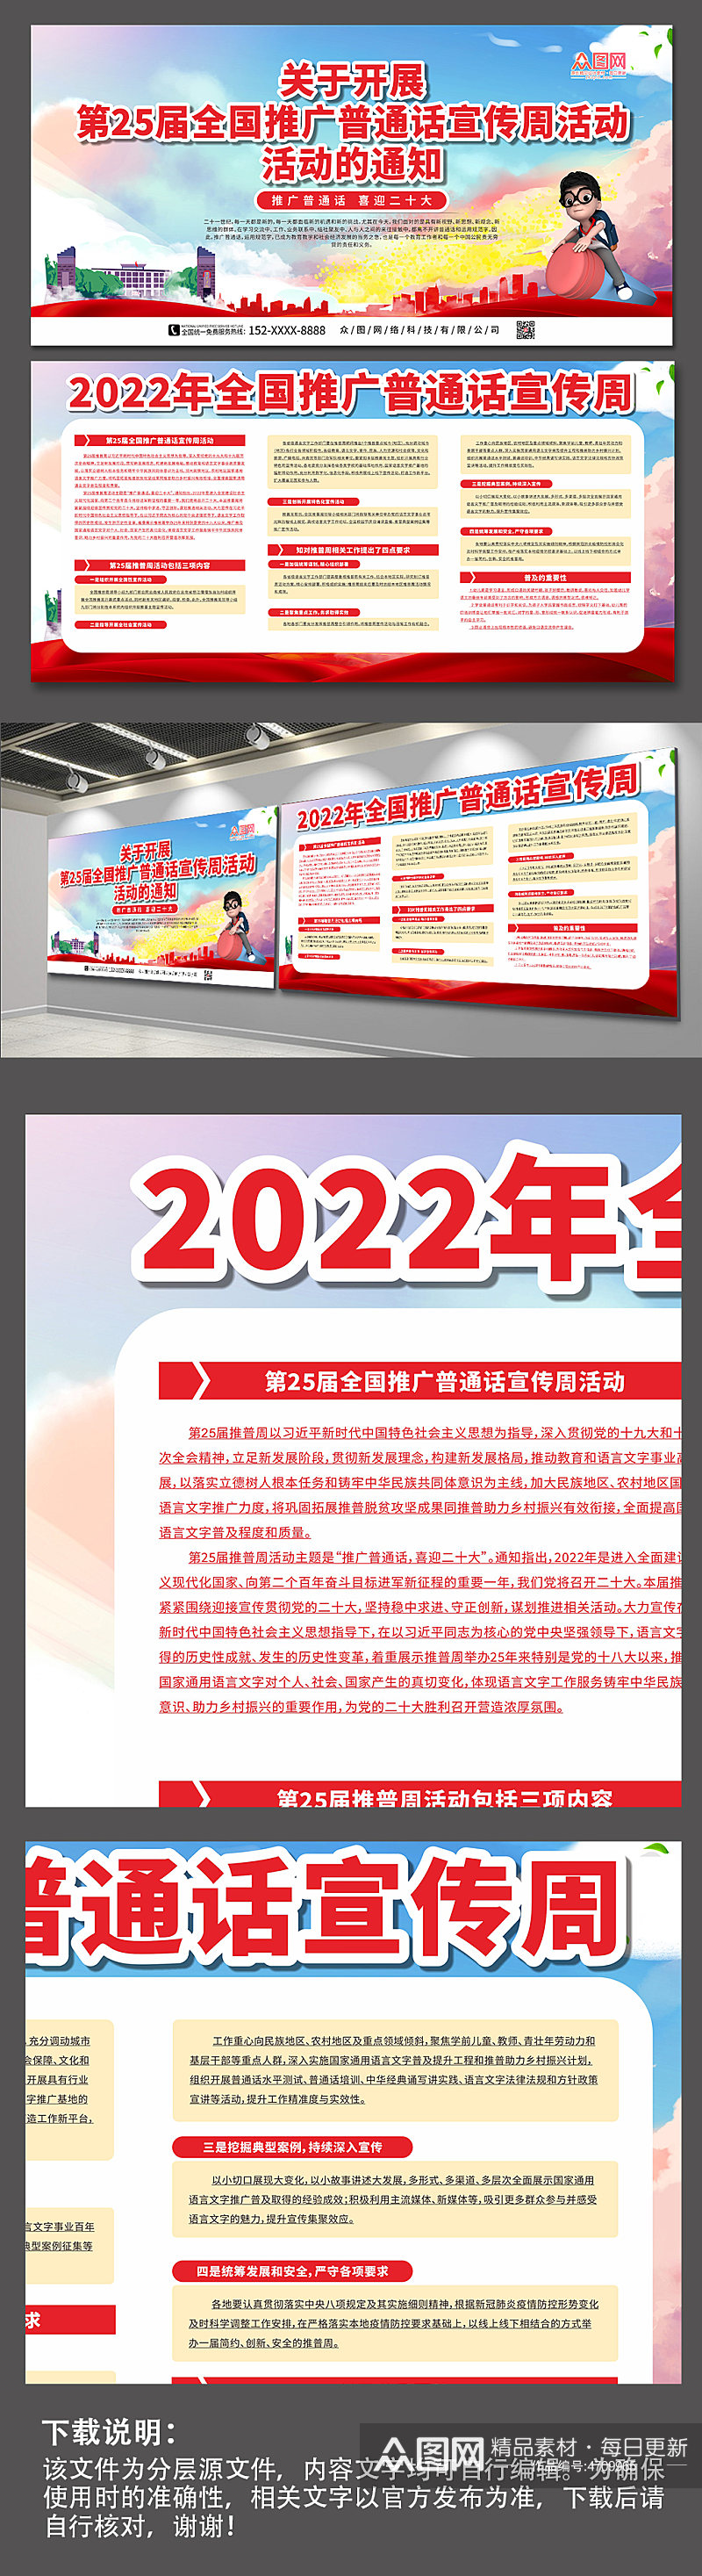 大气2022全国普通话宣传周展板素材